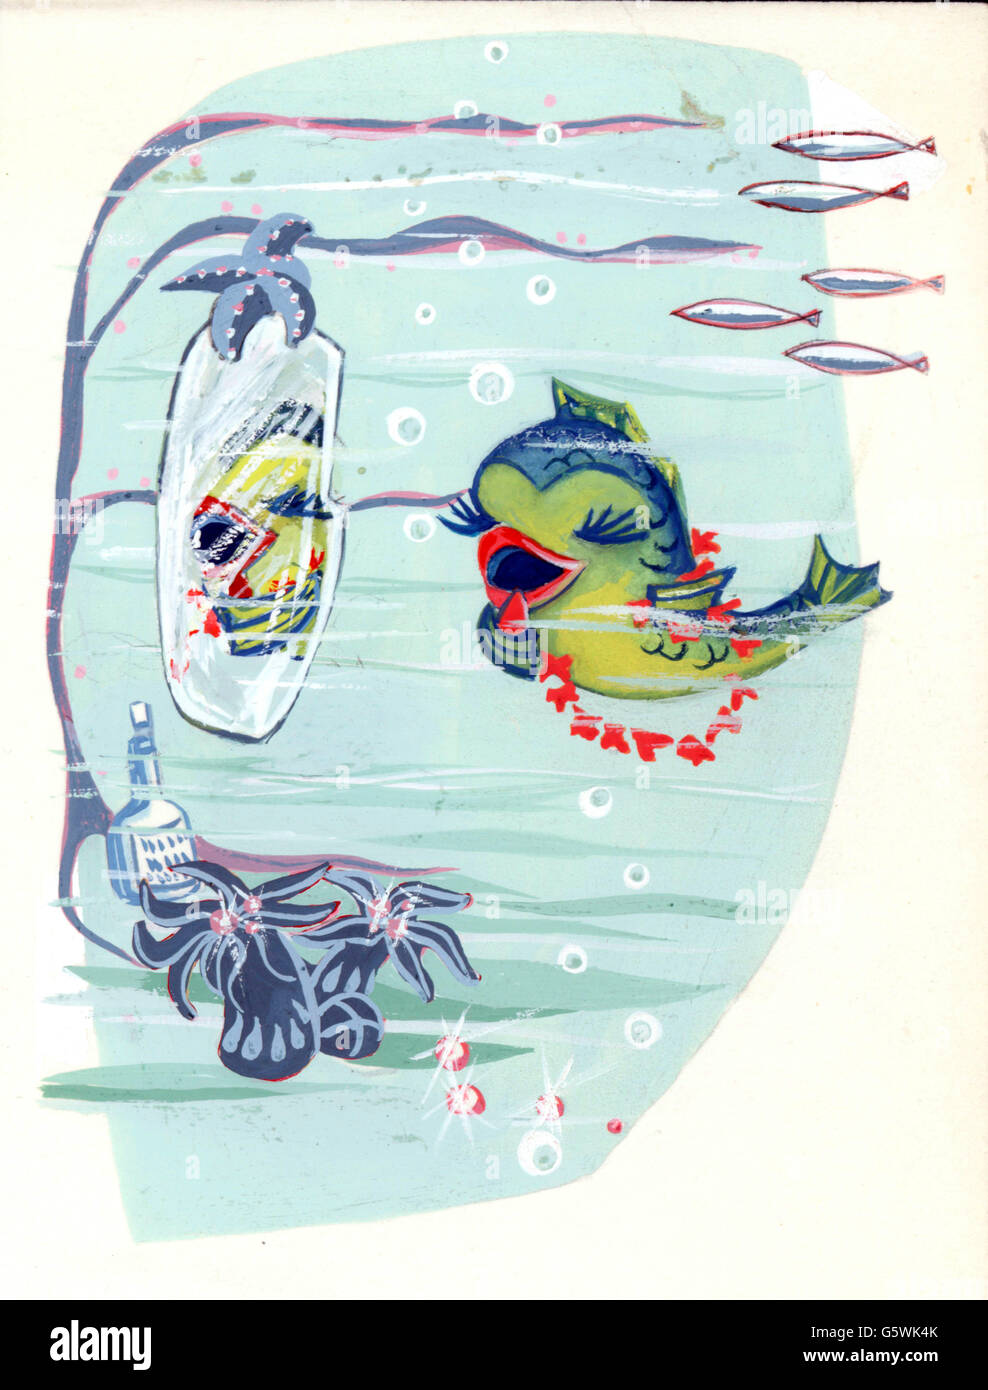 Littérature, illustrations, poissons femelles se regardant dans le miroir, ébauche pour un livre d'histoire inédit, artiste inconnu, Allemagne, années 1950, droits additionnels-Clearences-non disponible Banque D'Images